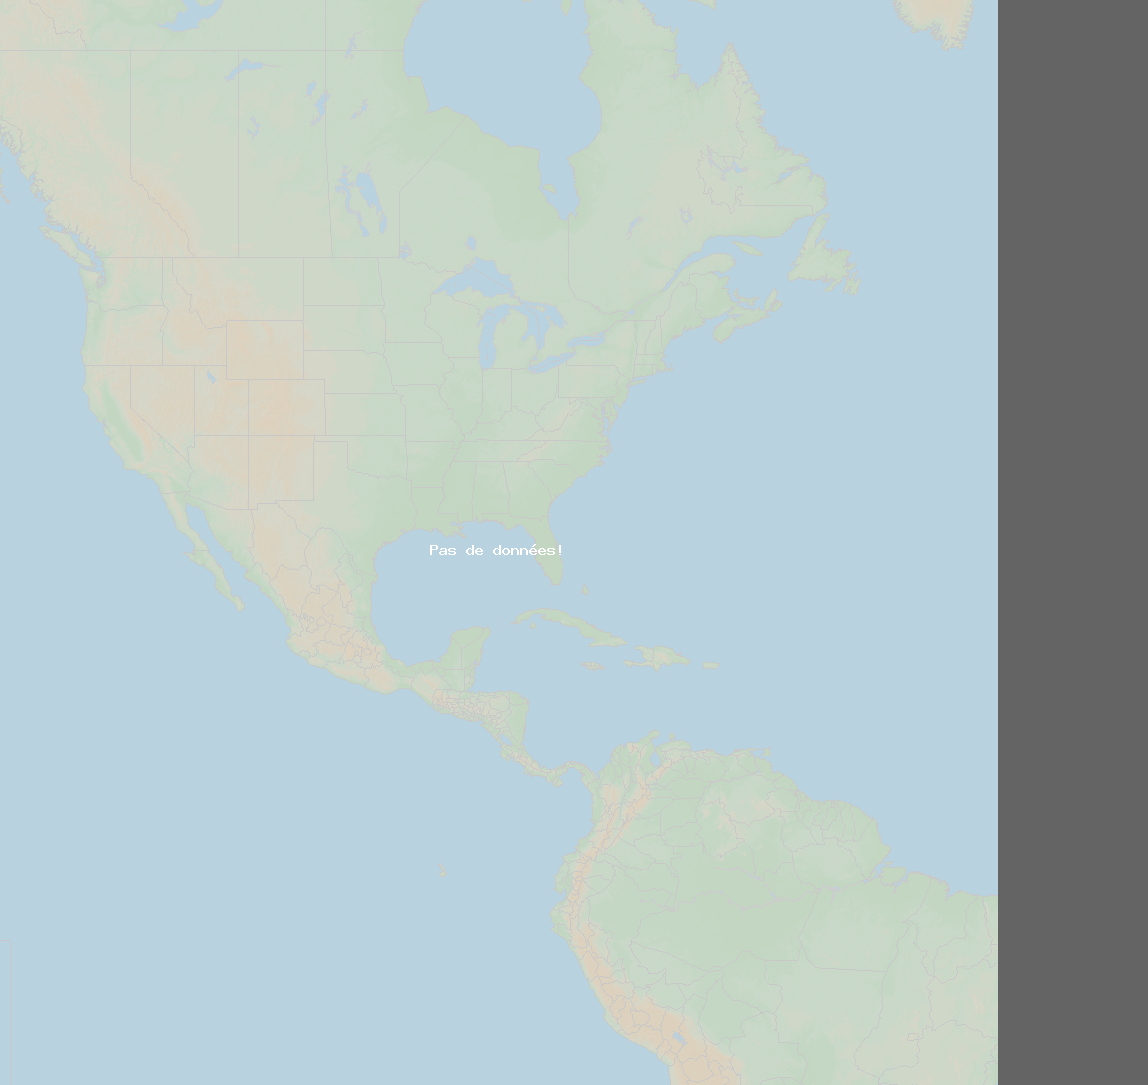 Taux coups de foudre (Station Renaico, IX Region) North America 2020 